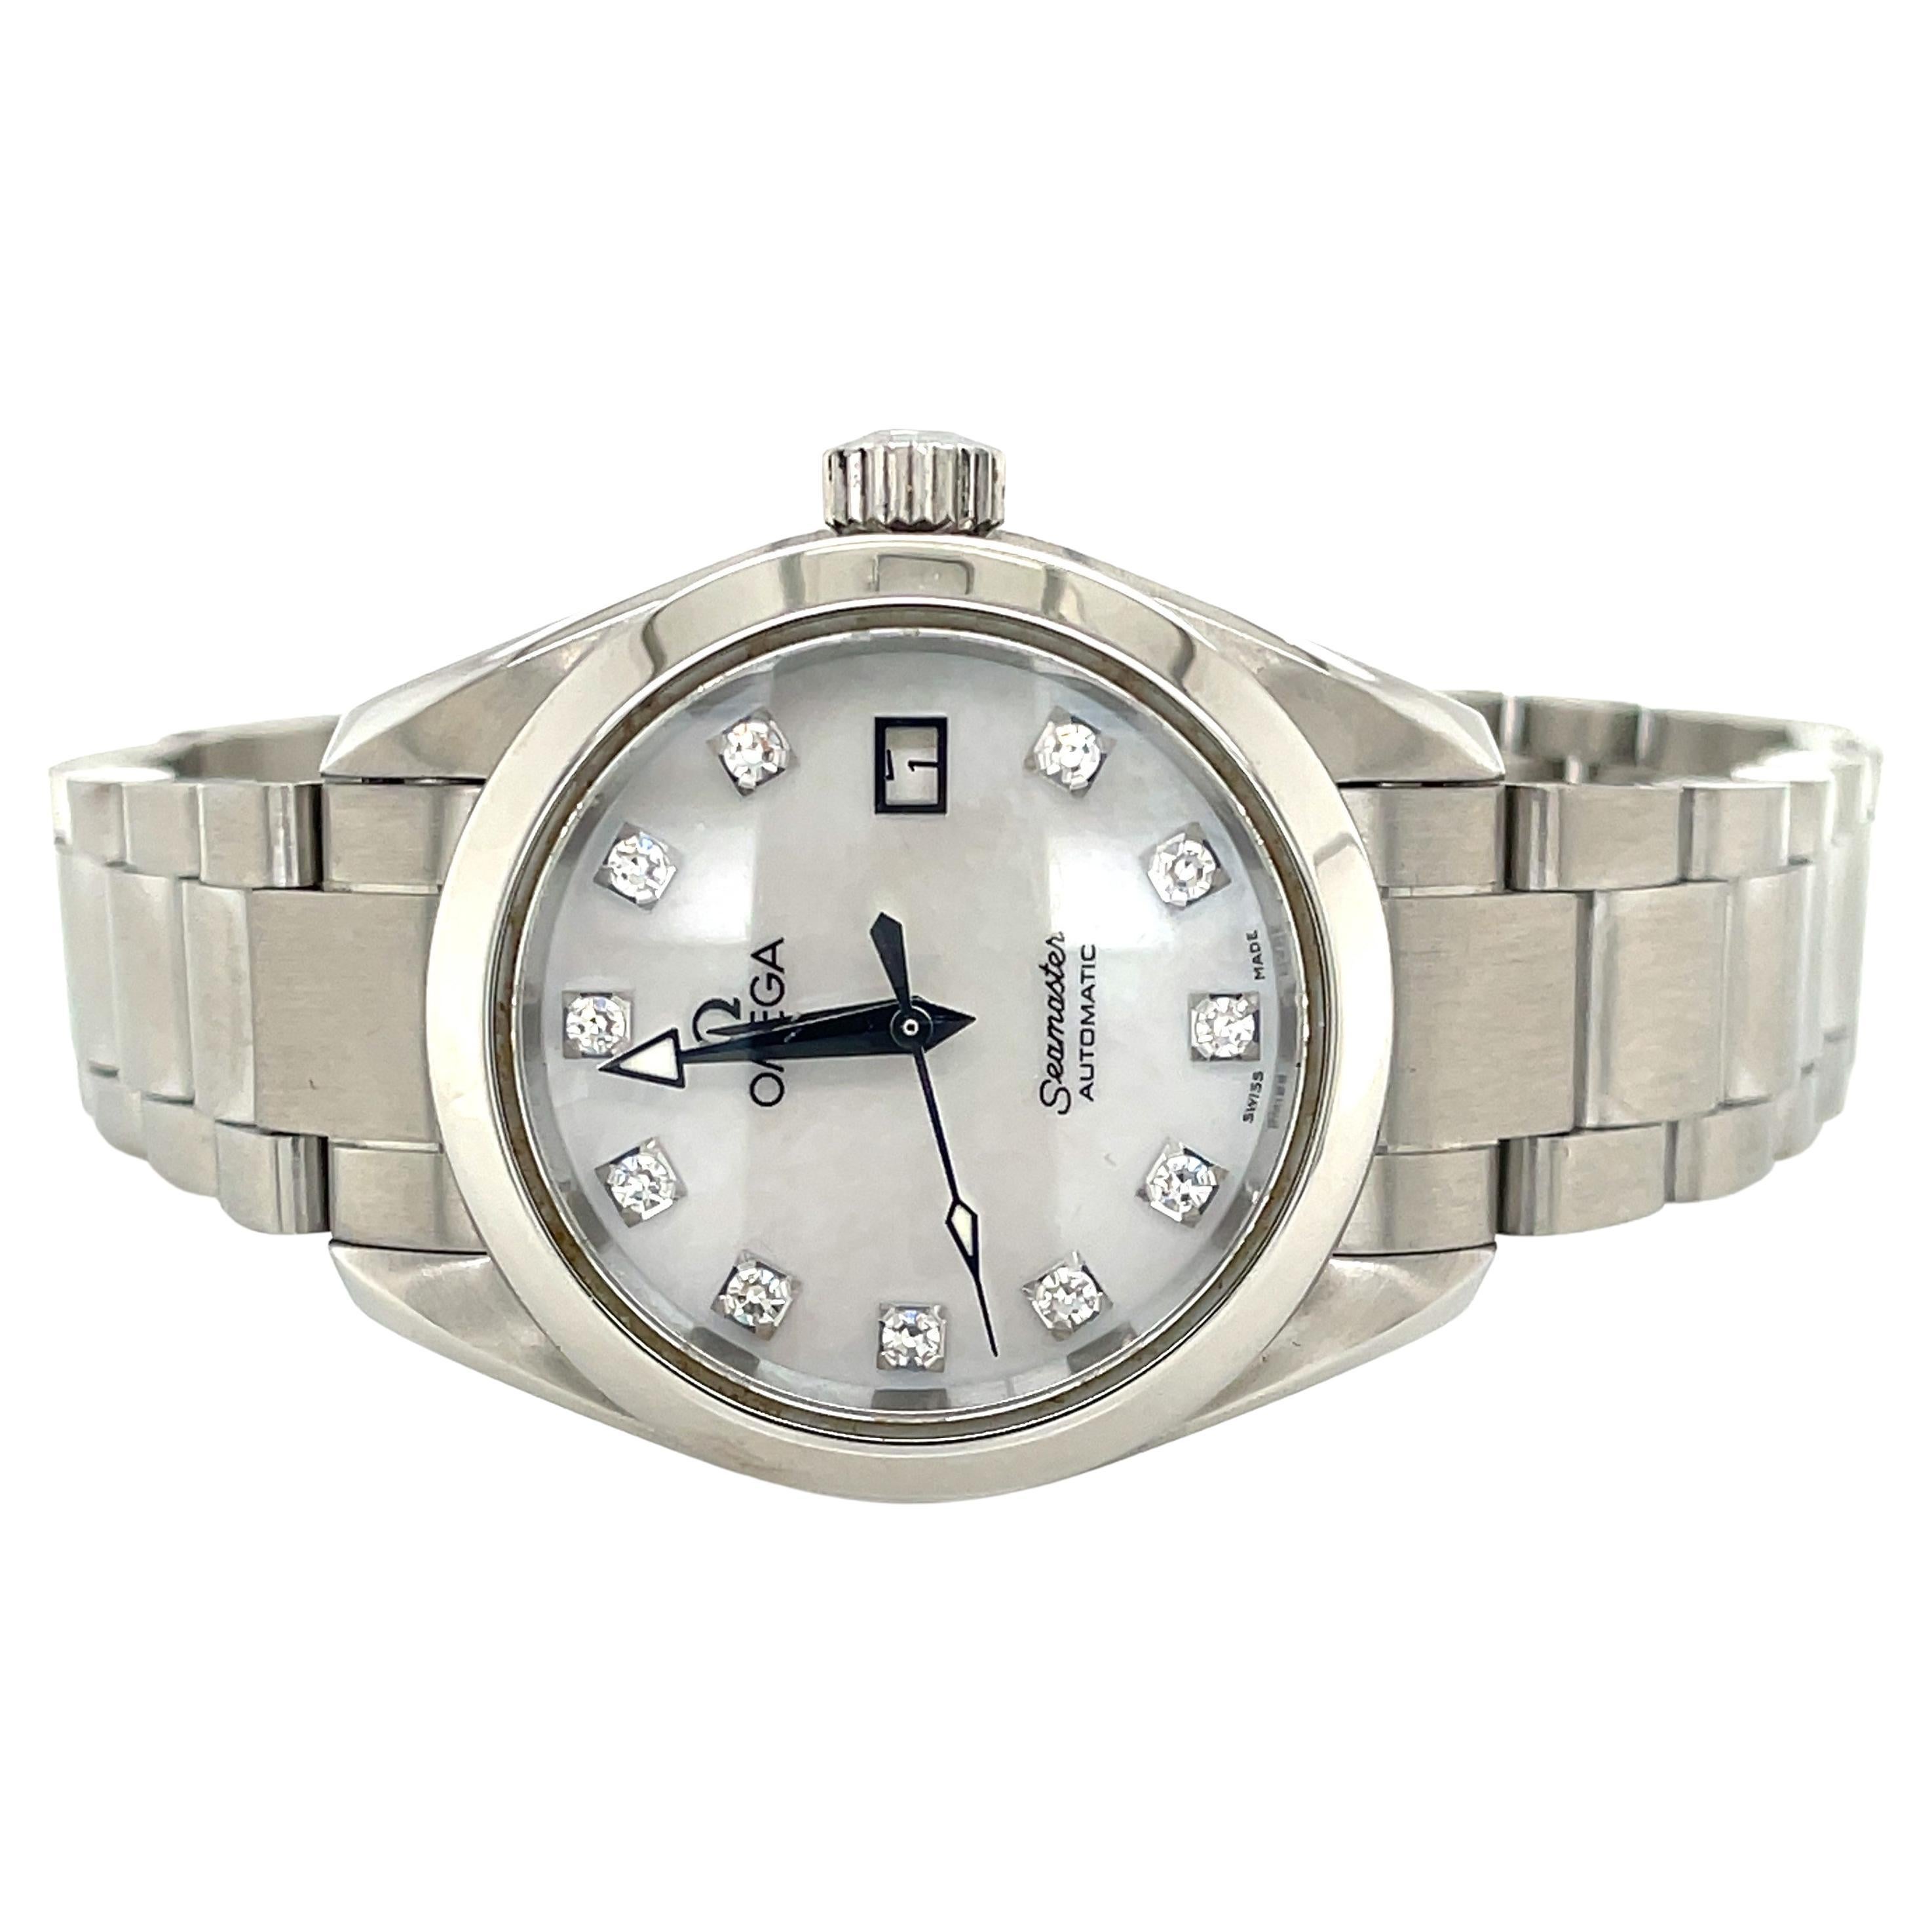 Ein Klassiker für die Damen, Omega Seamaster Aqua Terra Modell 5661113 Automatic Stainless Steel Wrist Watch in hervorragendem Zustand. Mit einem makellosen Perlmutt-Zifferblatt, elf Stundenziffern, die mit einem echten Diamanten von 0,19 Karat